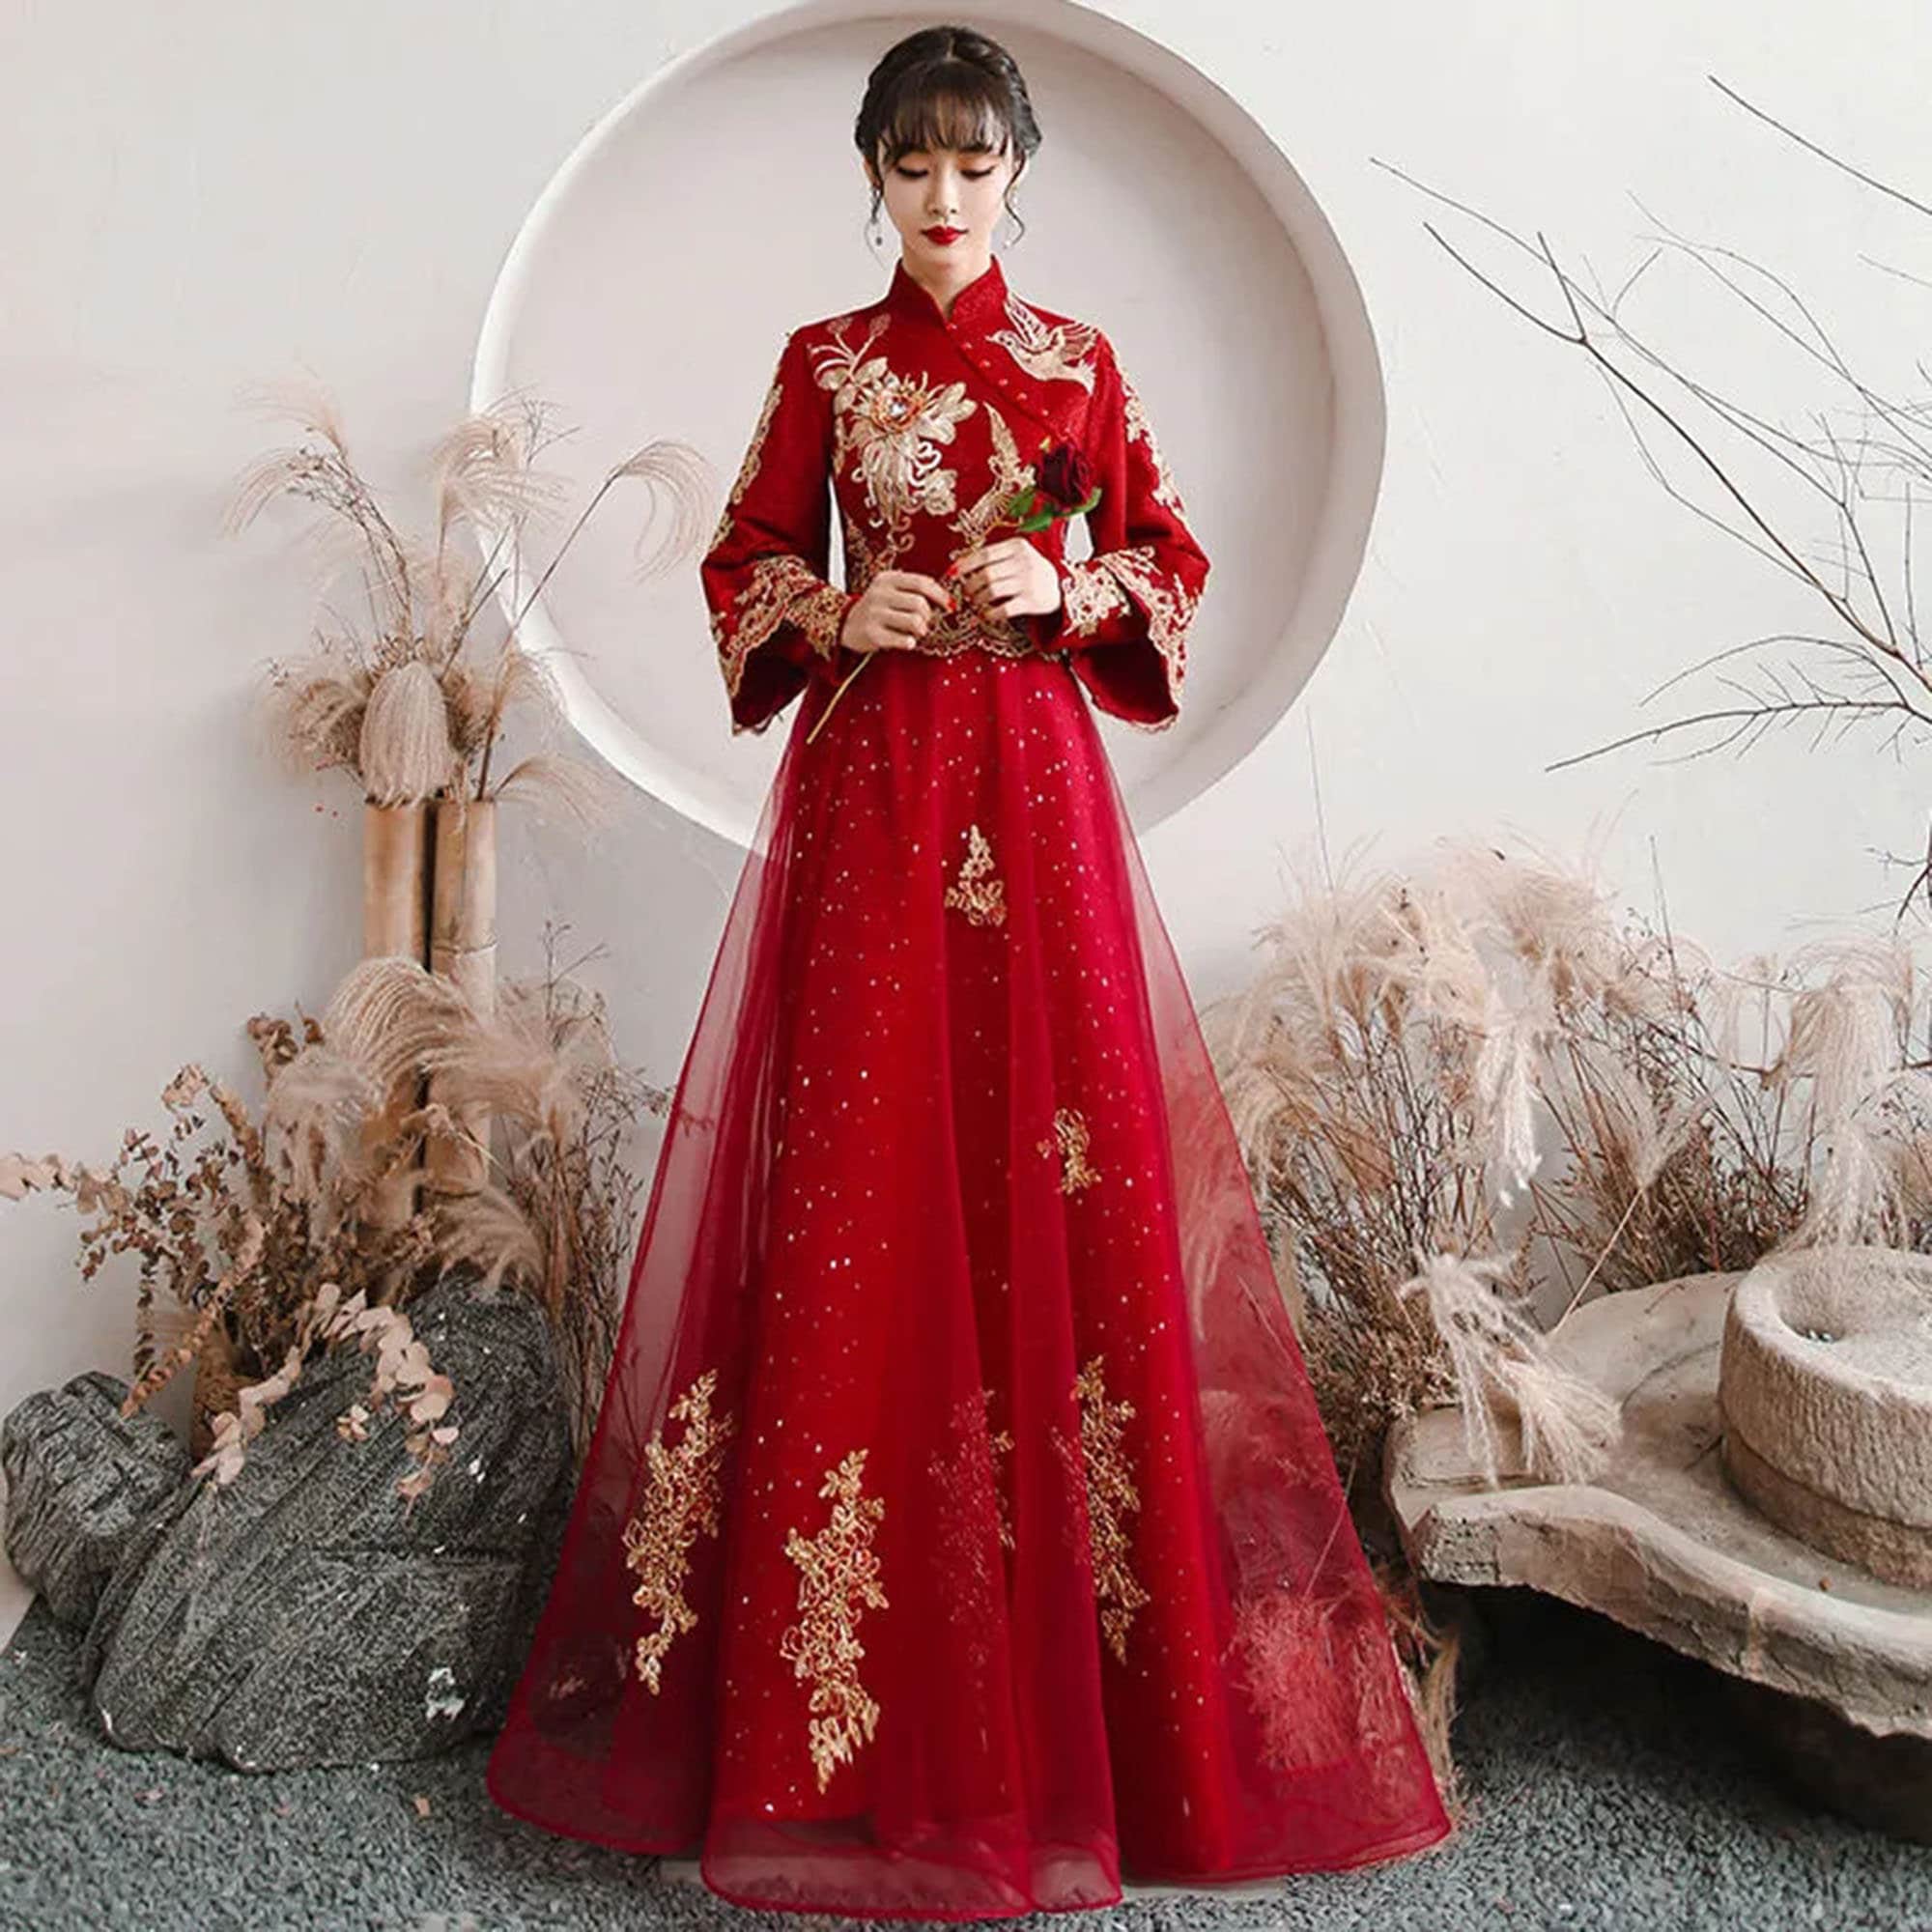 Modern Chinese Dress | Interact China